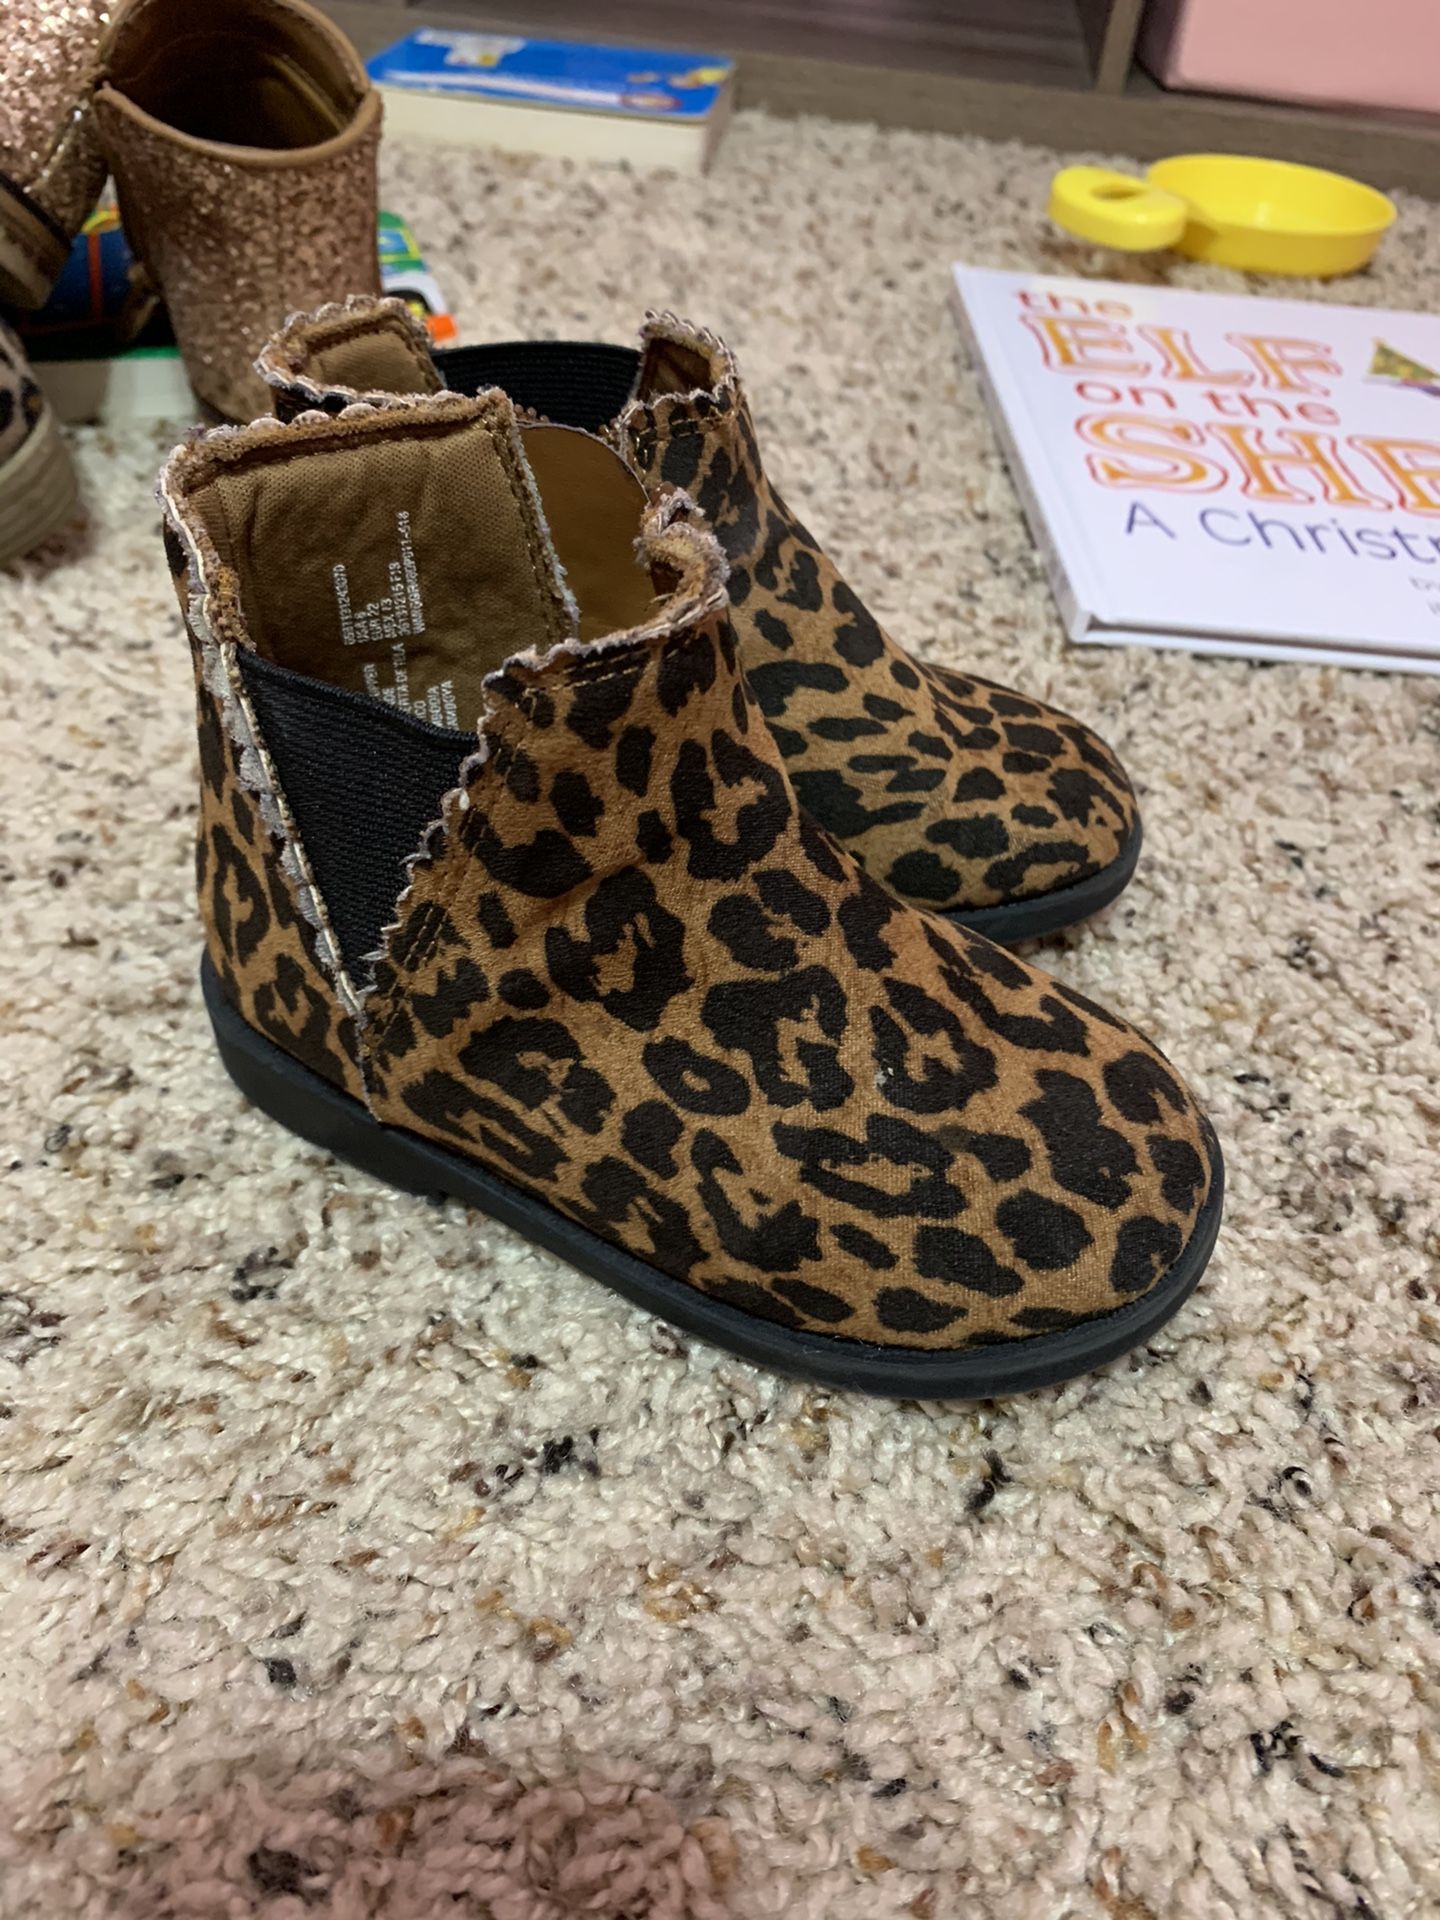 Girls cheetah boots